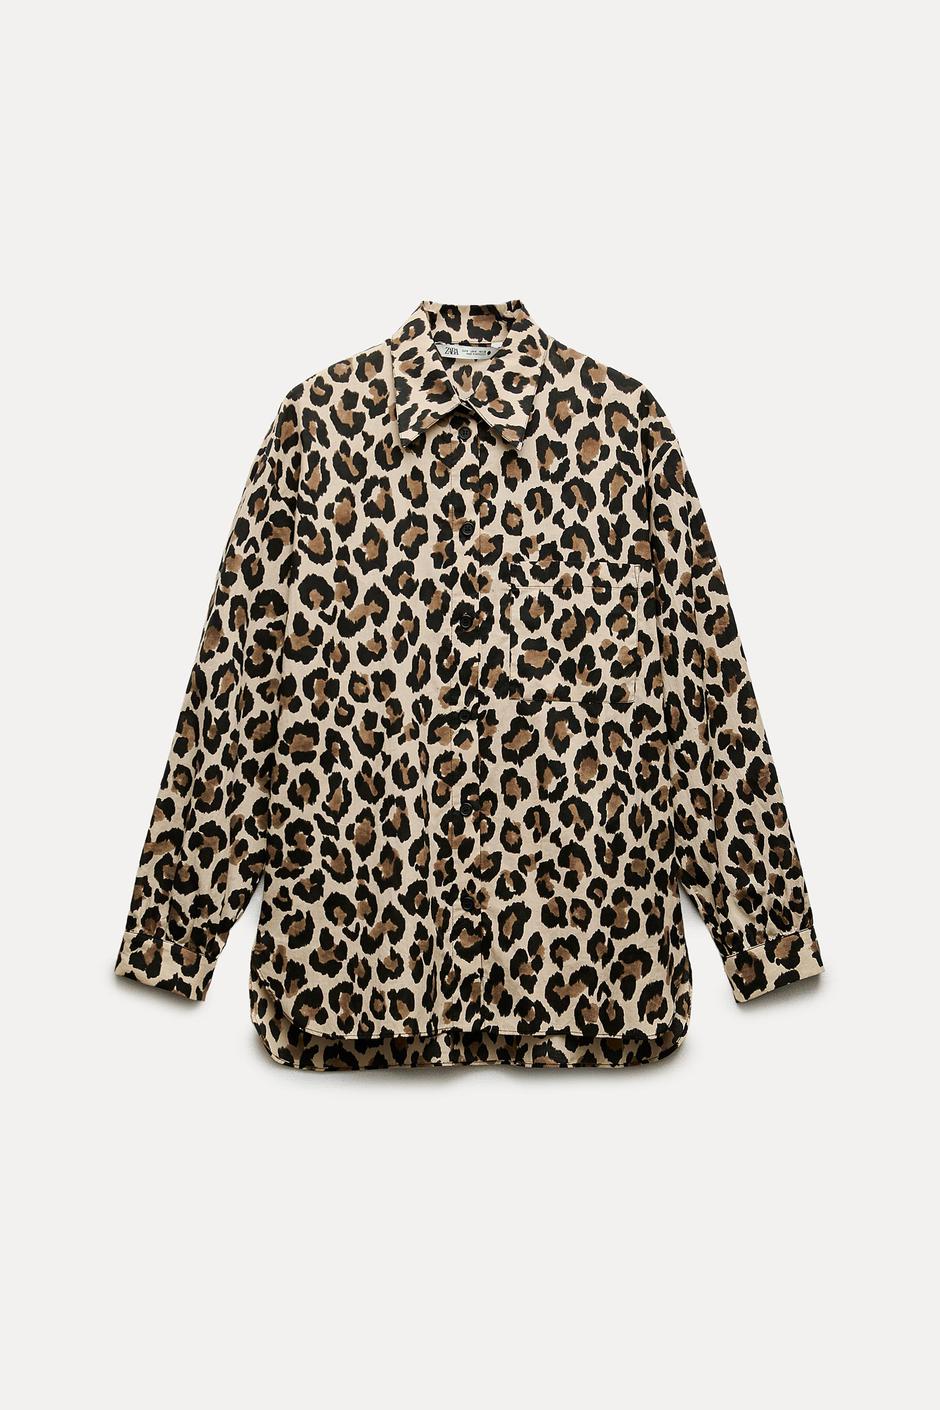 Foto: Zara, košulja u leopard uzorku | Autor: Instagram @andelica7